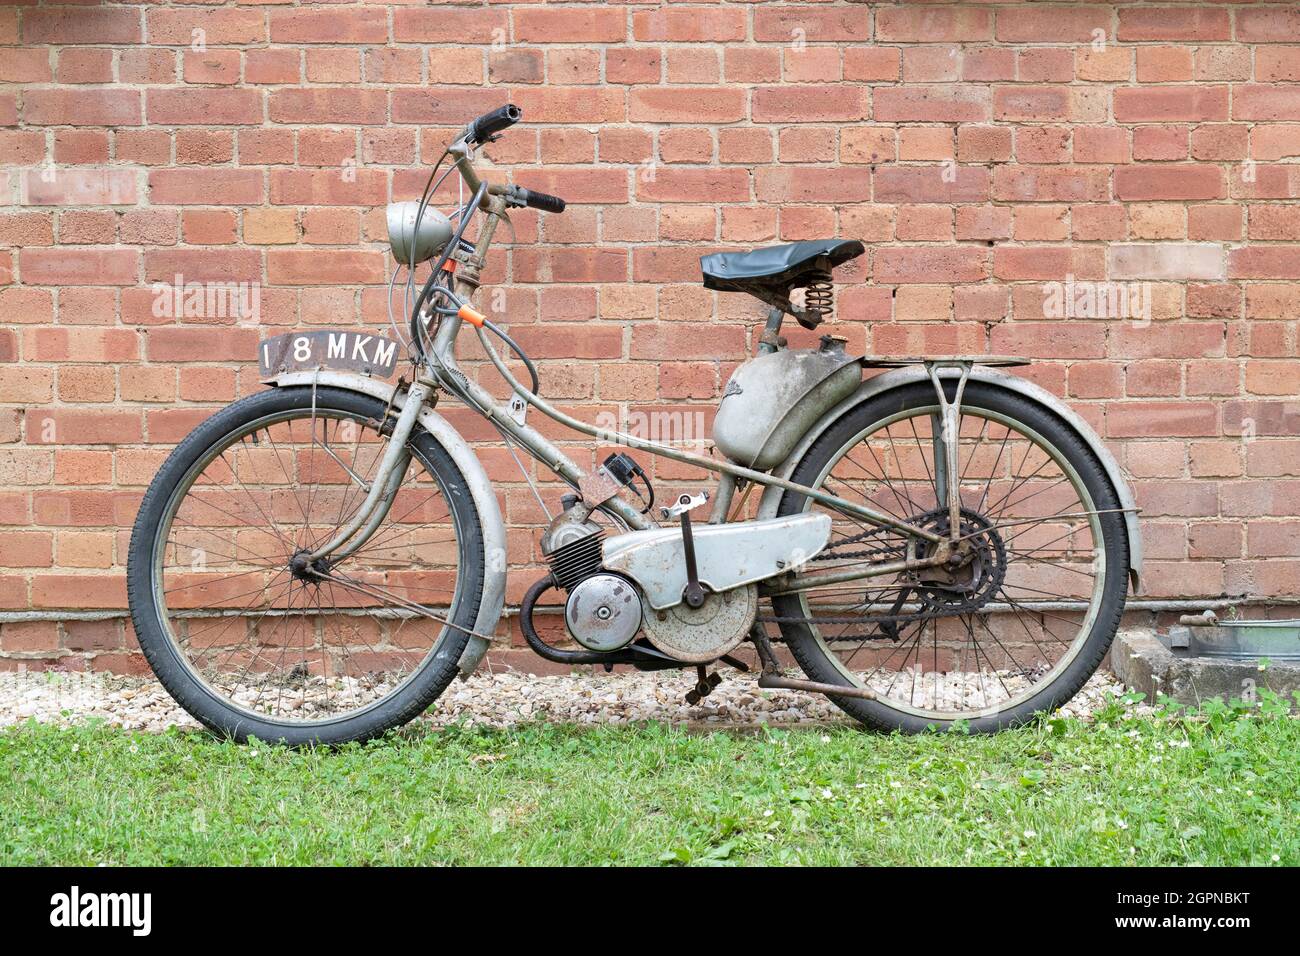 1960 Motobecane vélo motorisé français au centre du patrimoine de Bicester événement de la ruée du dimanche. Bicester, Oxfordshire, Angleterre Banque D'Images